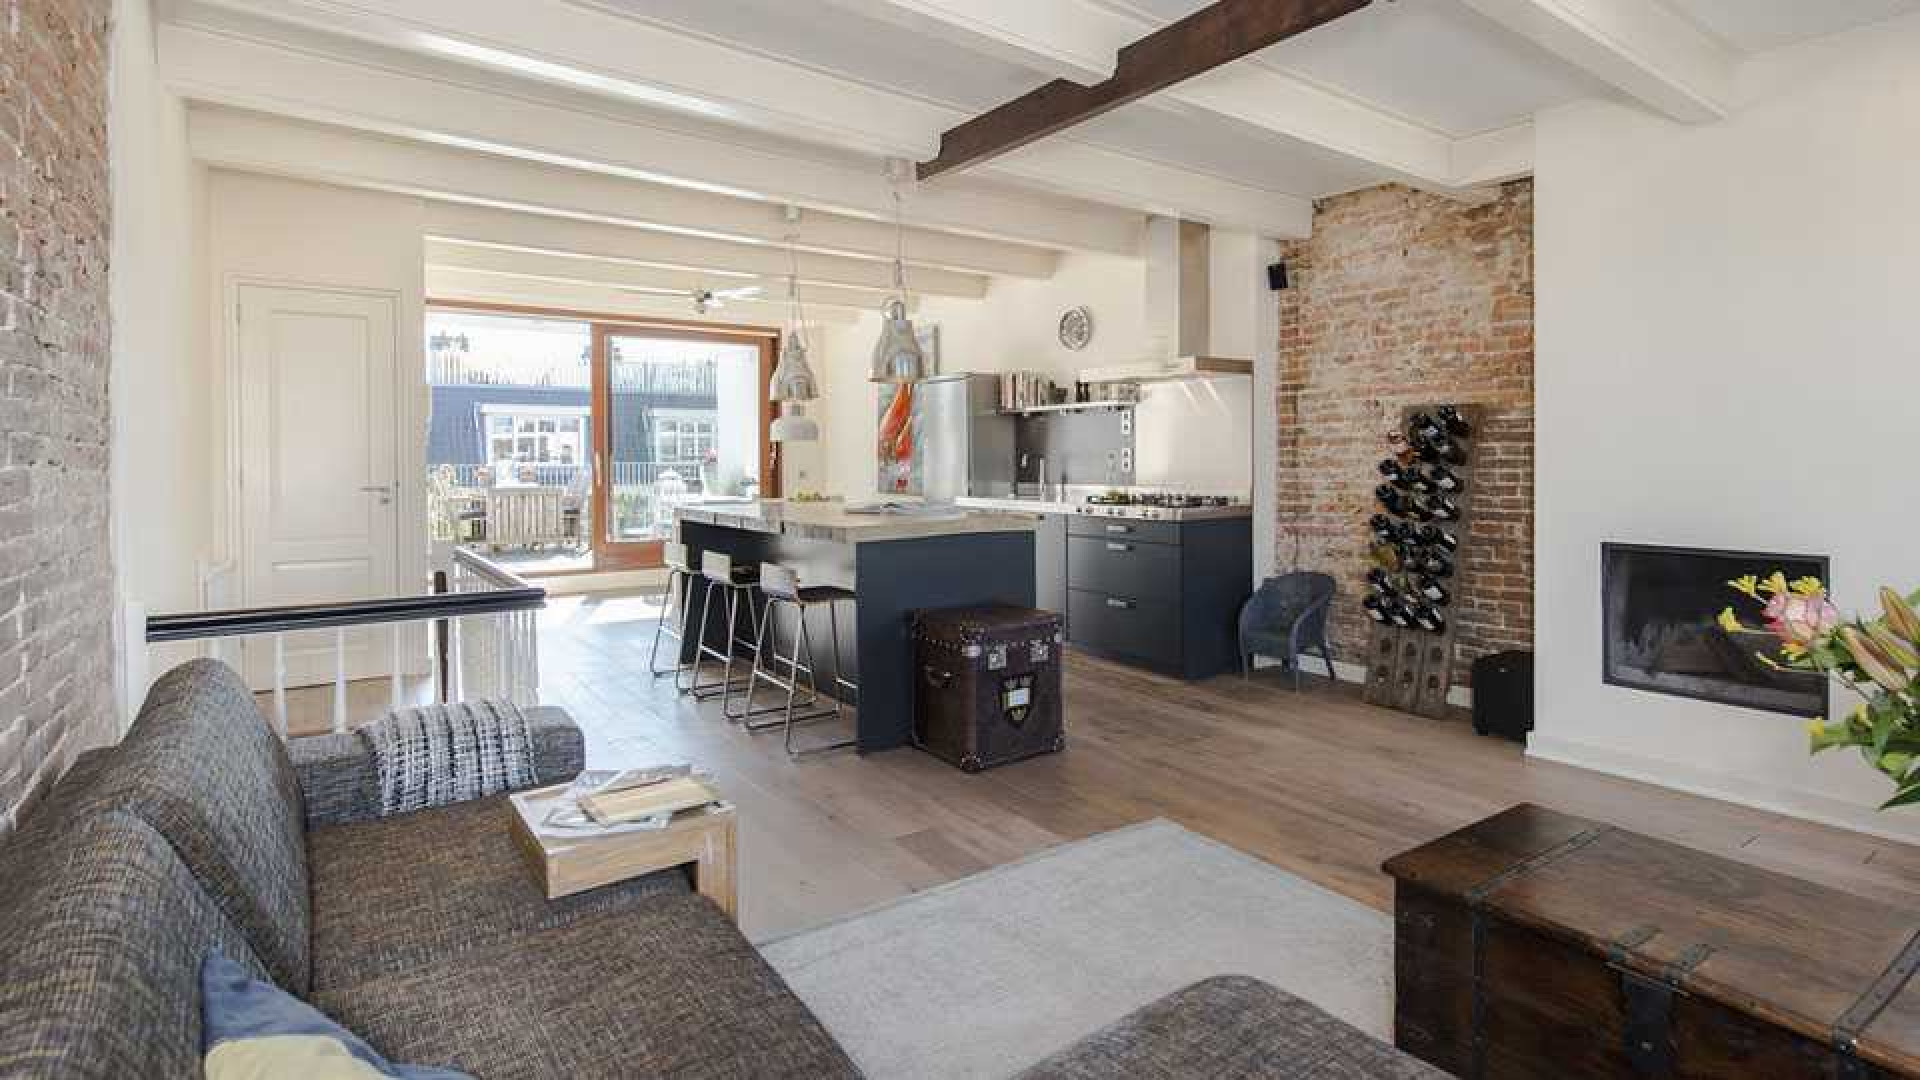 Armin van Buuren koopt luxe dubbel bovenhuis in Amsterdam Oud-West. Zie foto's 1